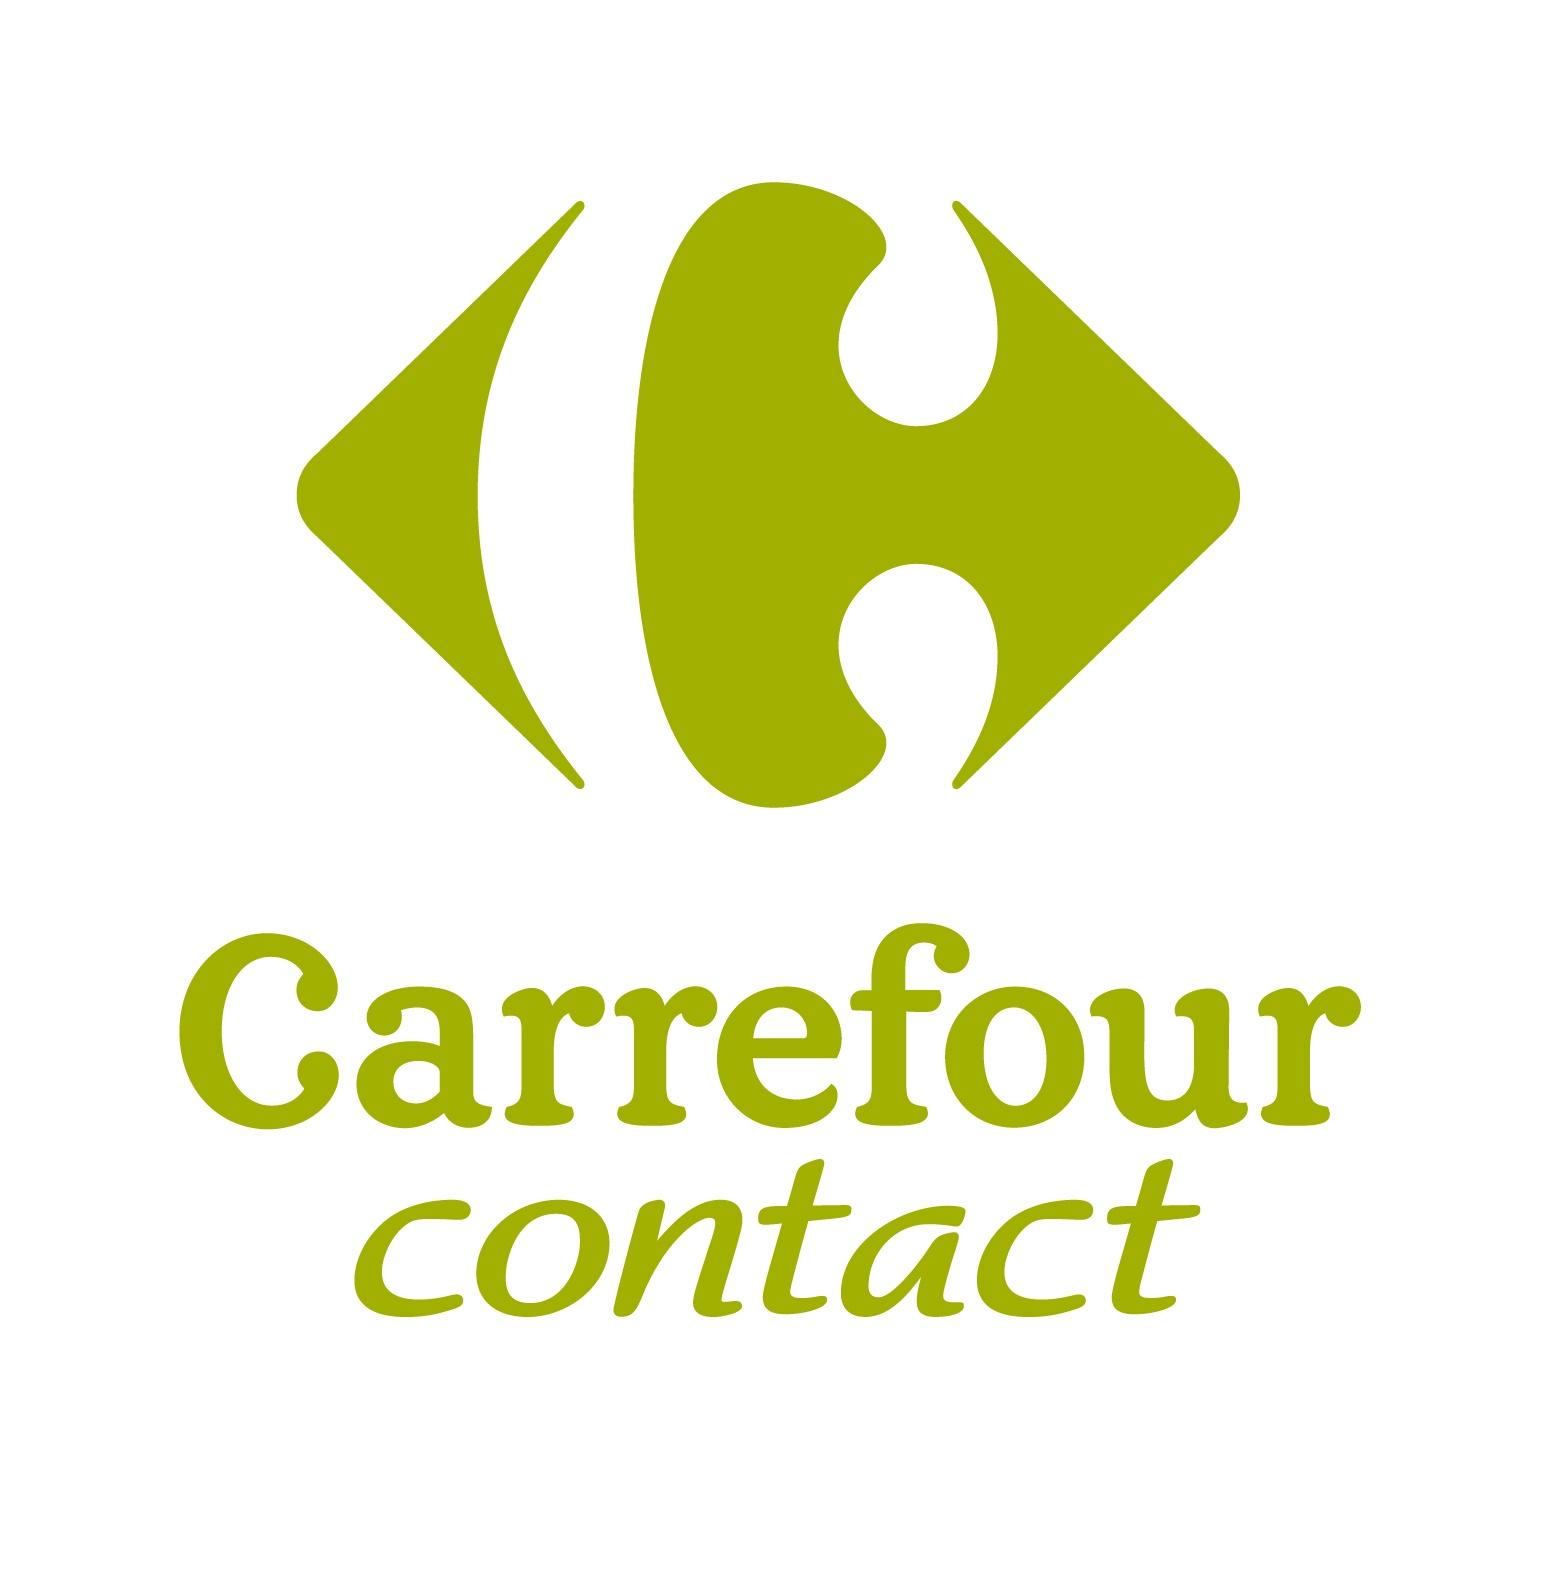 Carrefour Contact Château Arnoux Saint Auban